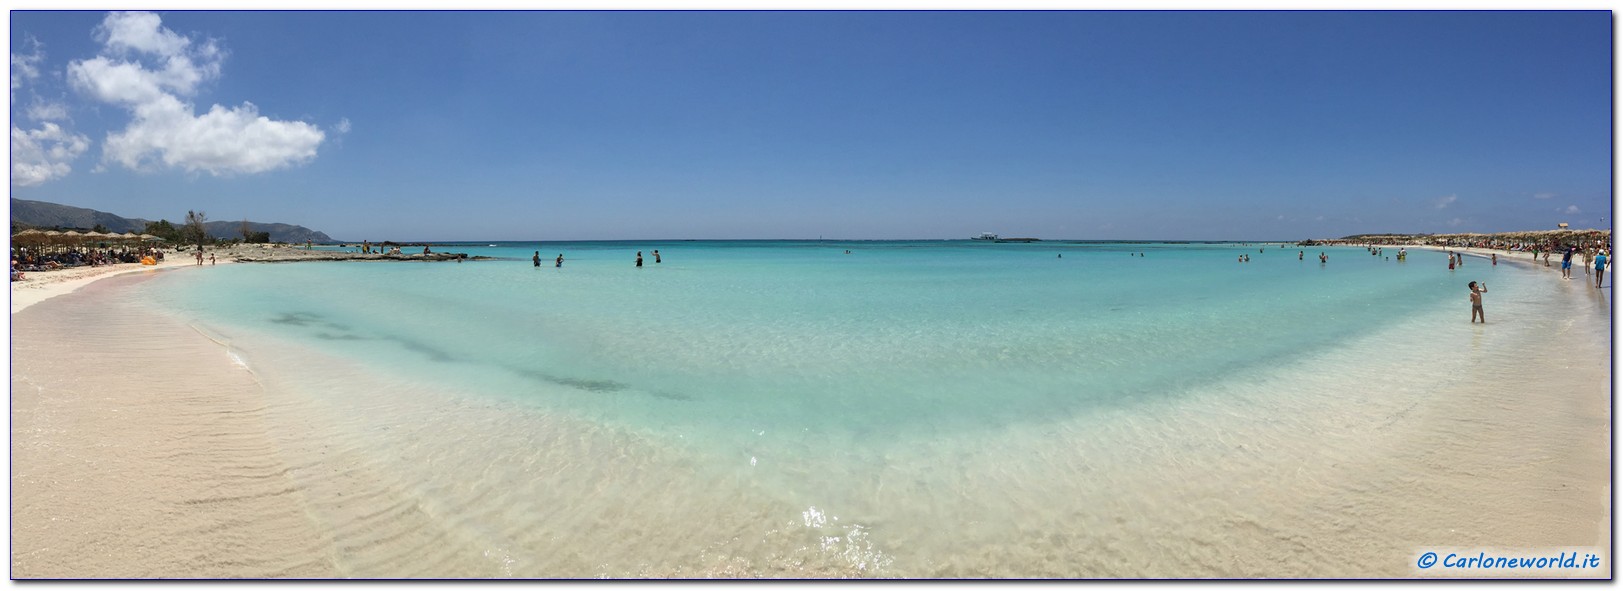 La migliore spiaggia di Creta